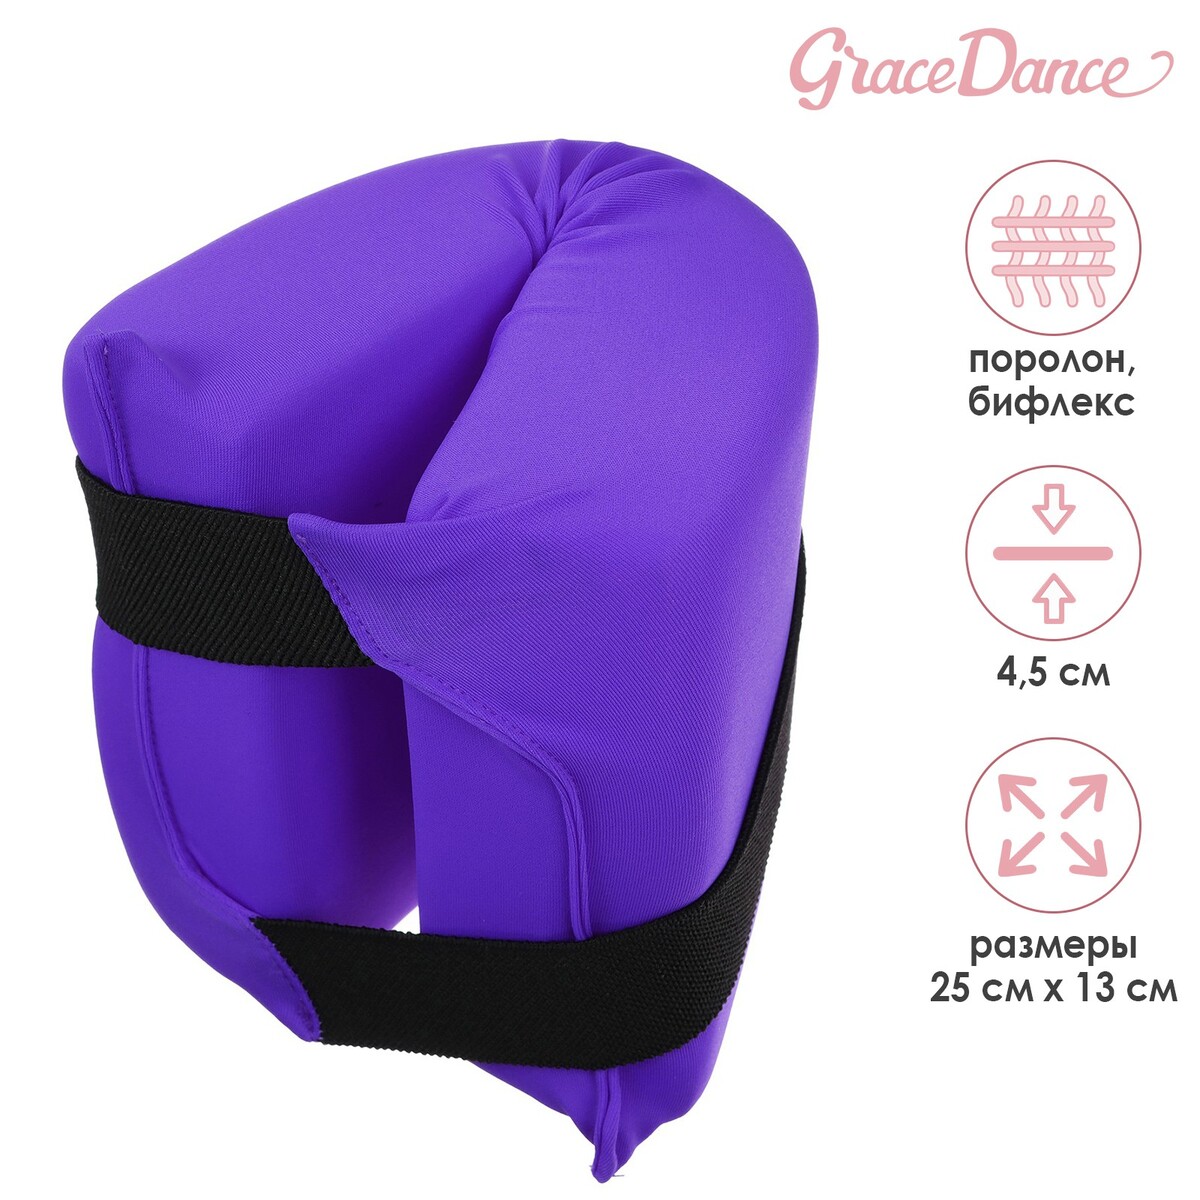 фото Подушка для растяжки grace dance, цвет фиолетовый